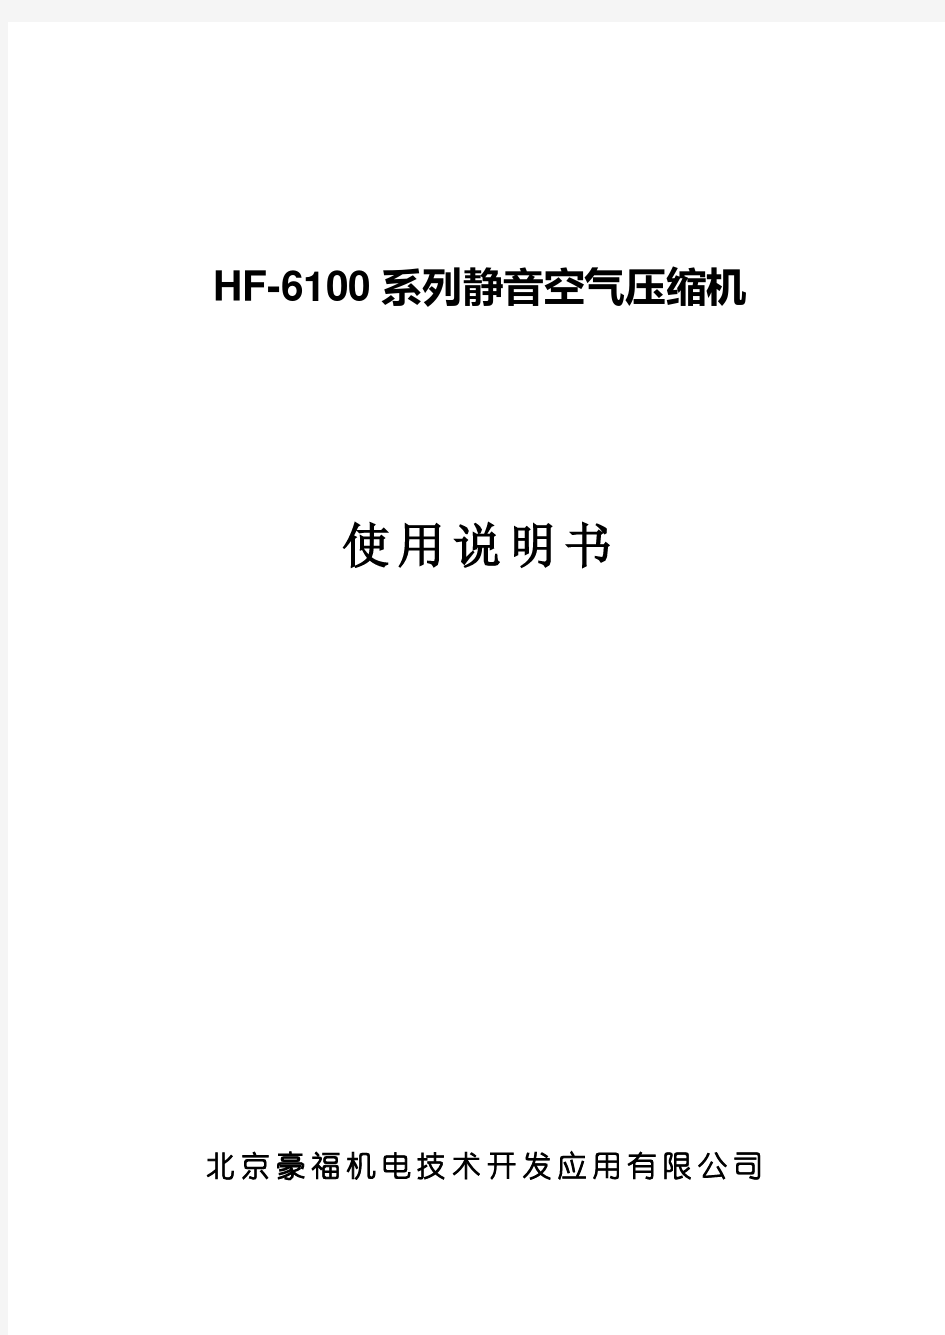 HF-6100系列静音空气压缩机说明书